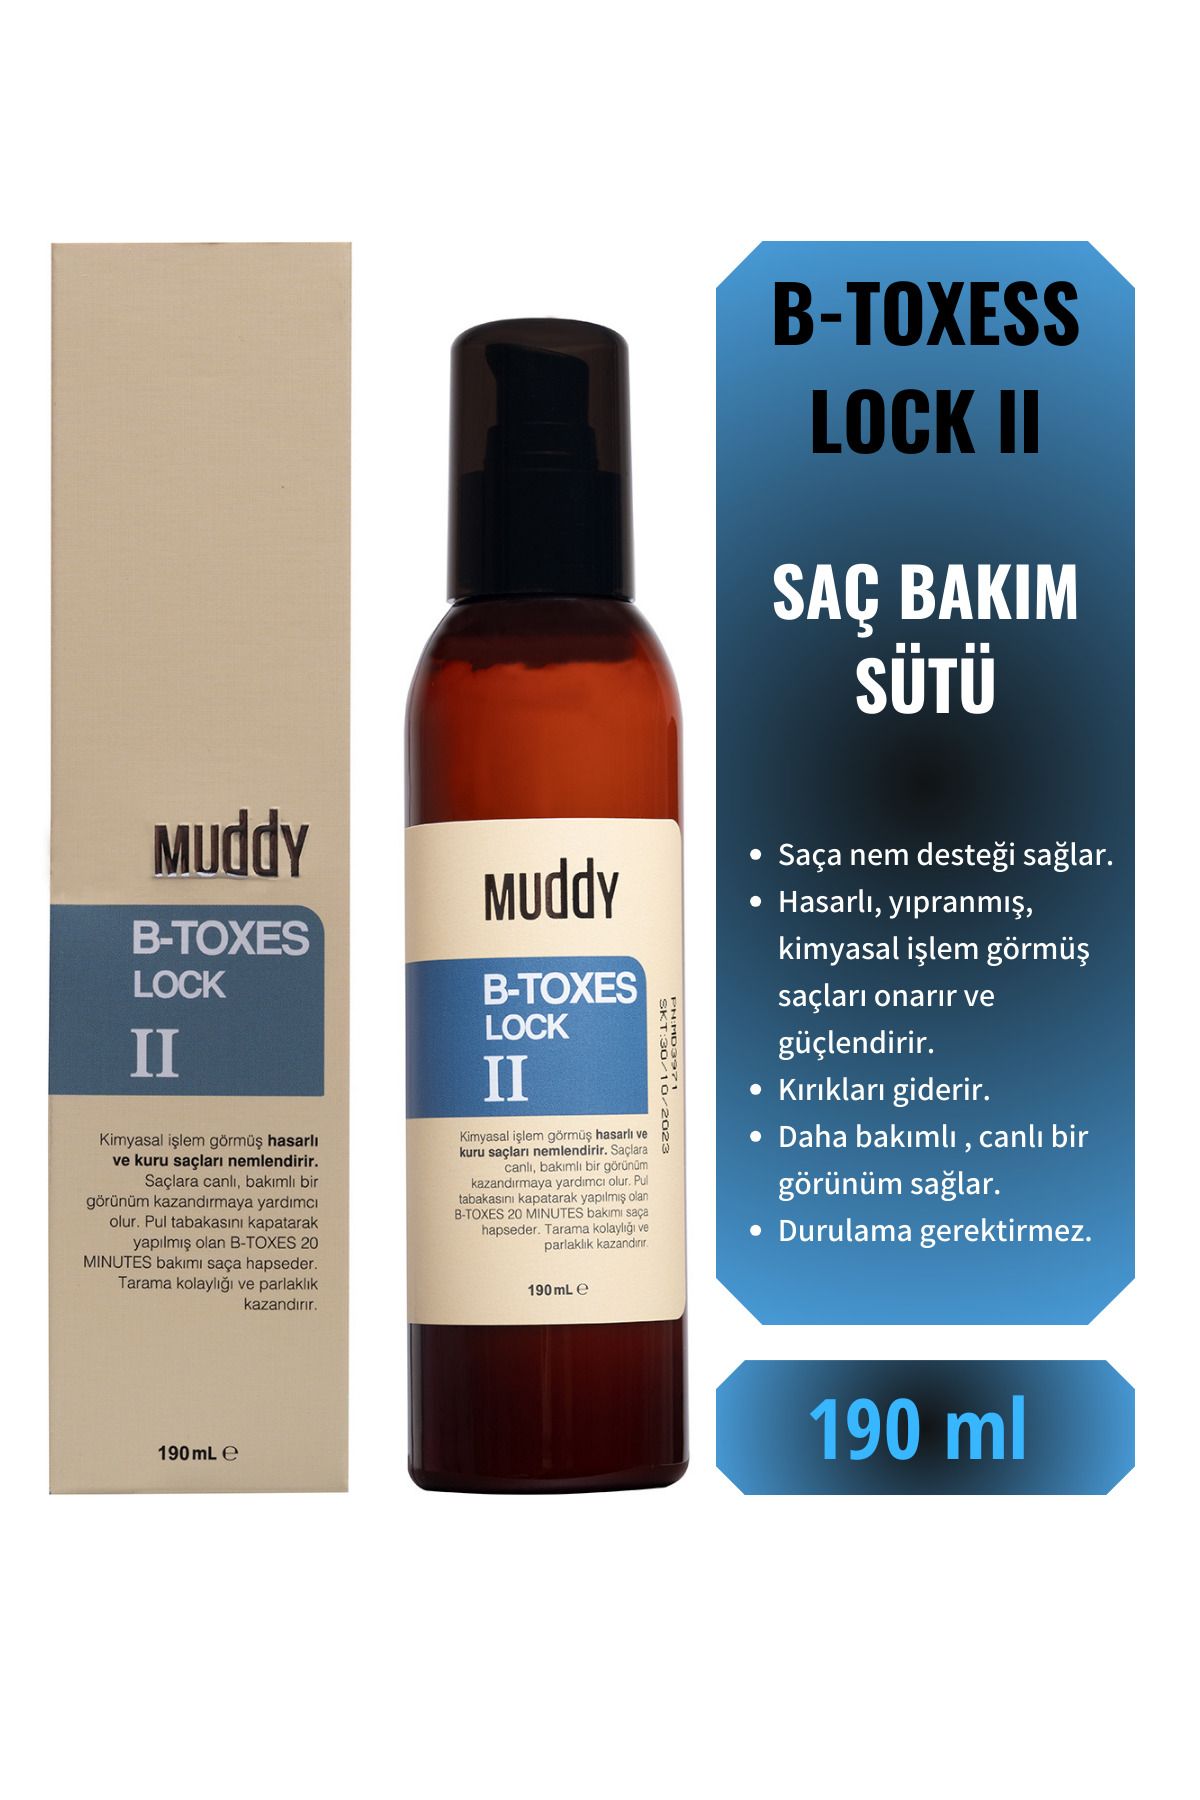 Muddy Yıpranmış Saçlara Besleyici Ve Onarıcı B-toxes Lock Iı Durulanmayan Bakım Sütü 190 Ml.